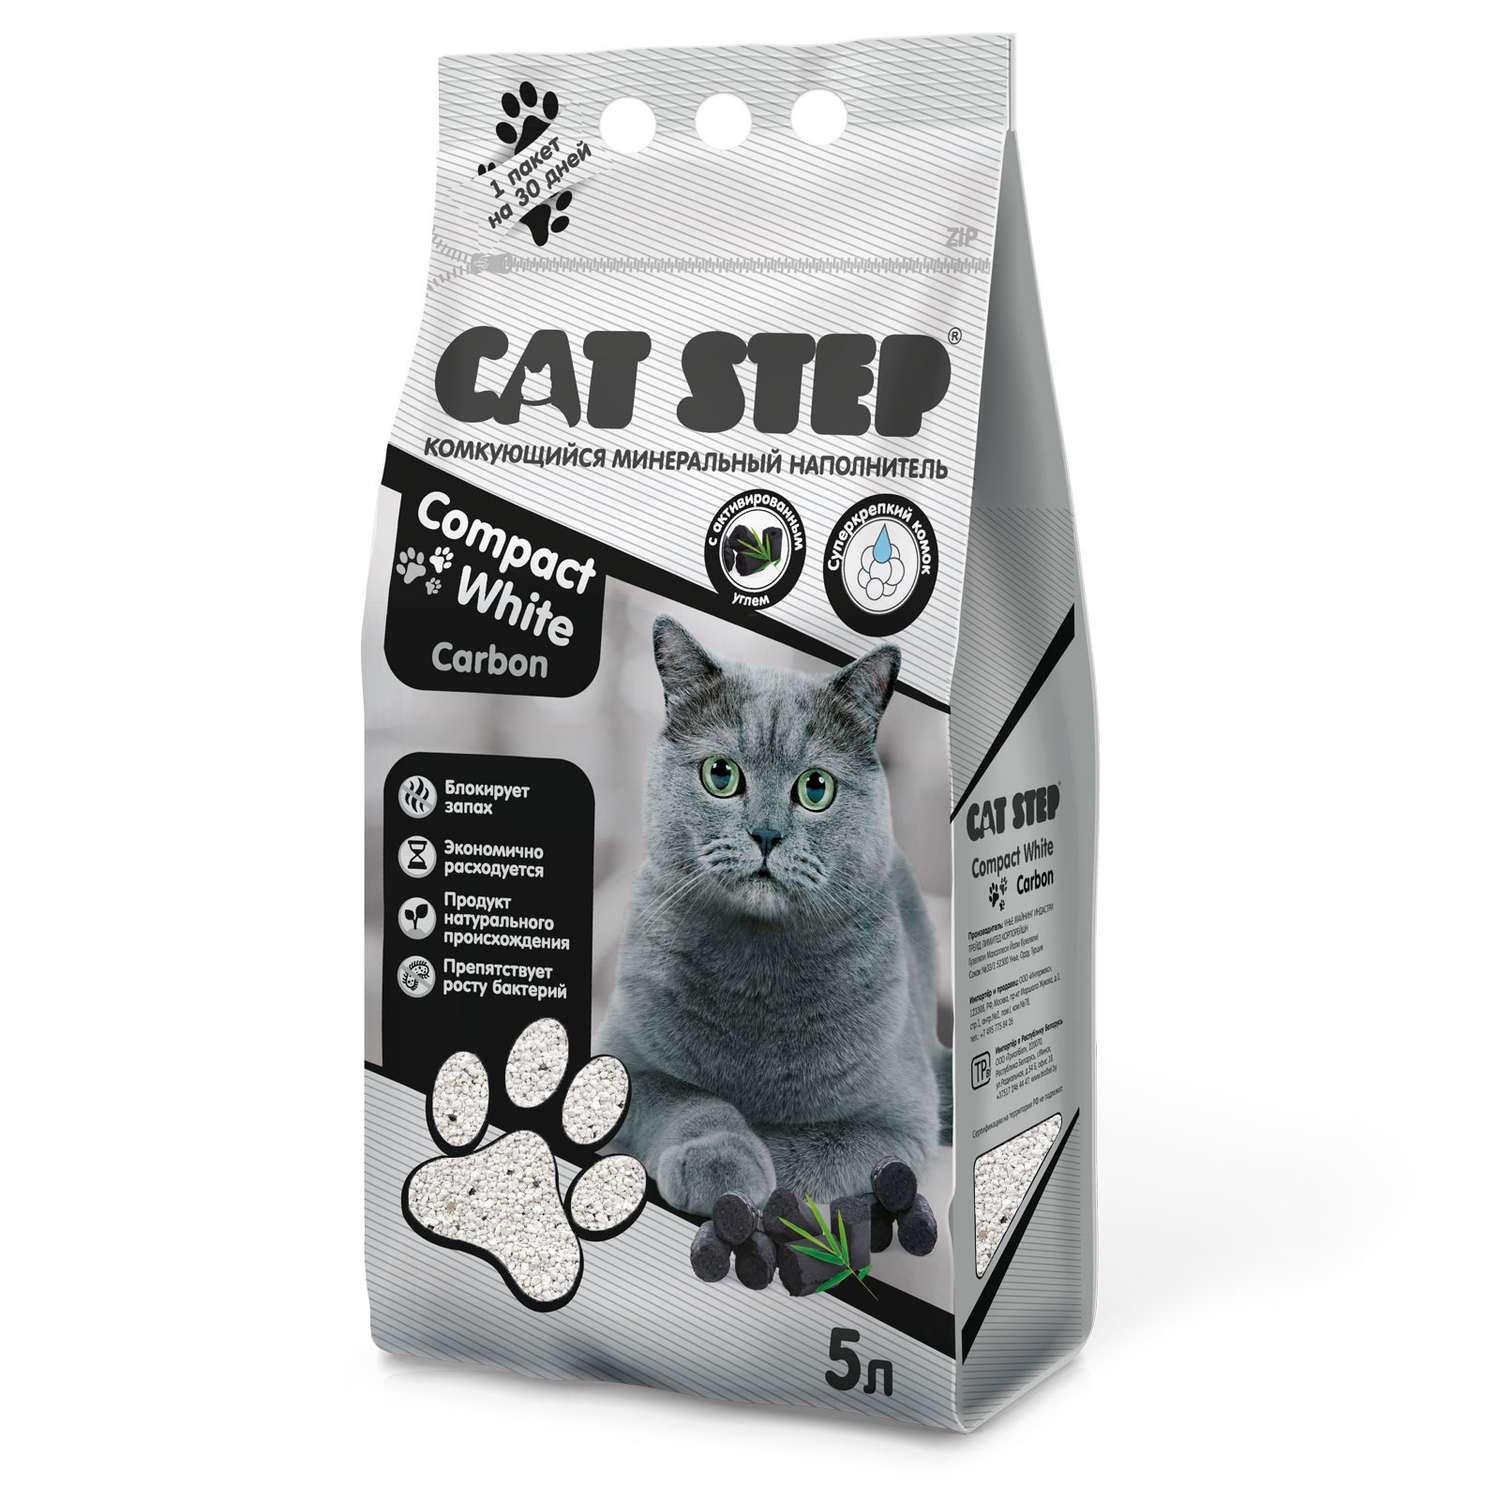 Наполнитель для кошачьего туалета Cat Step Compact White Carbon комкующийся минеральный 5л - фото 1